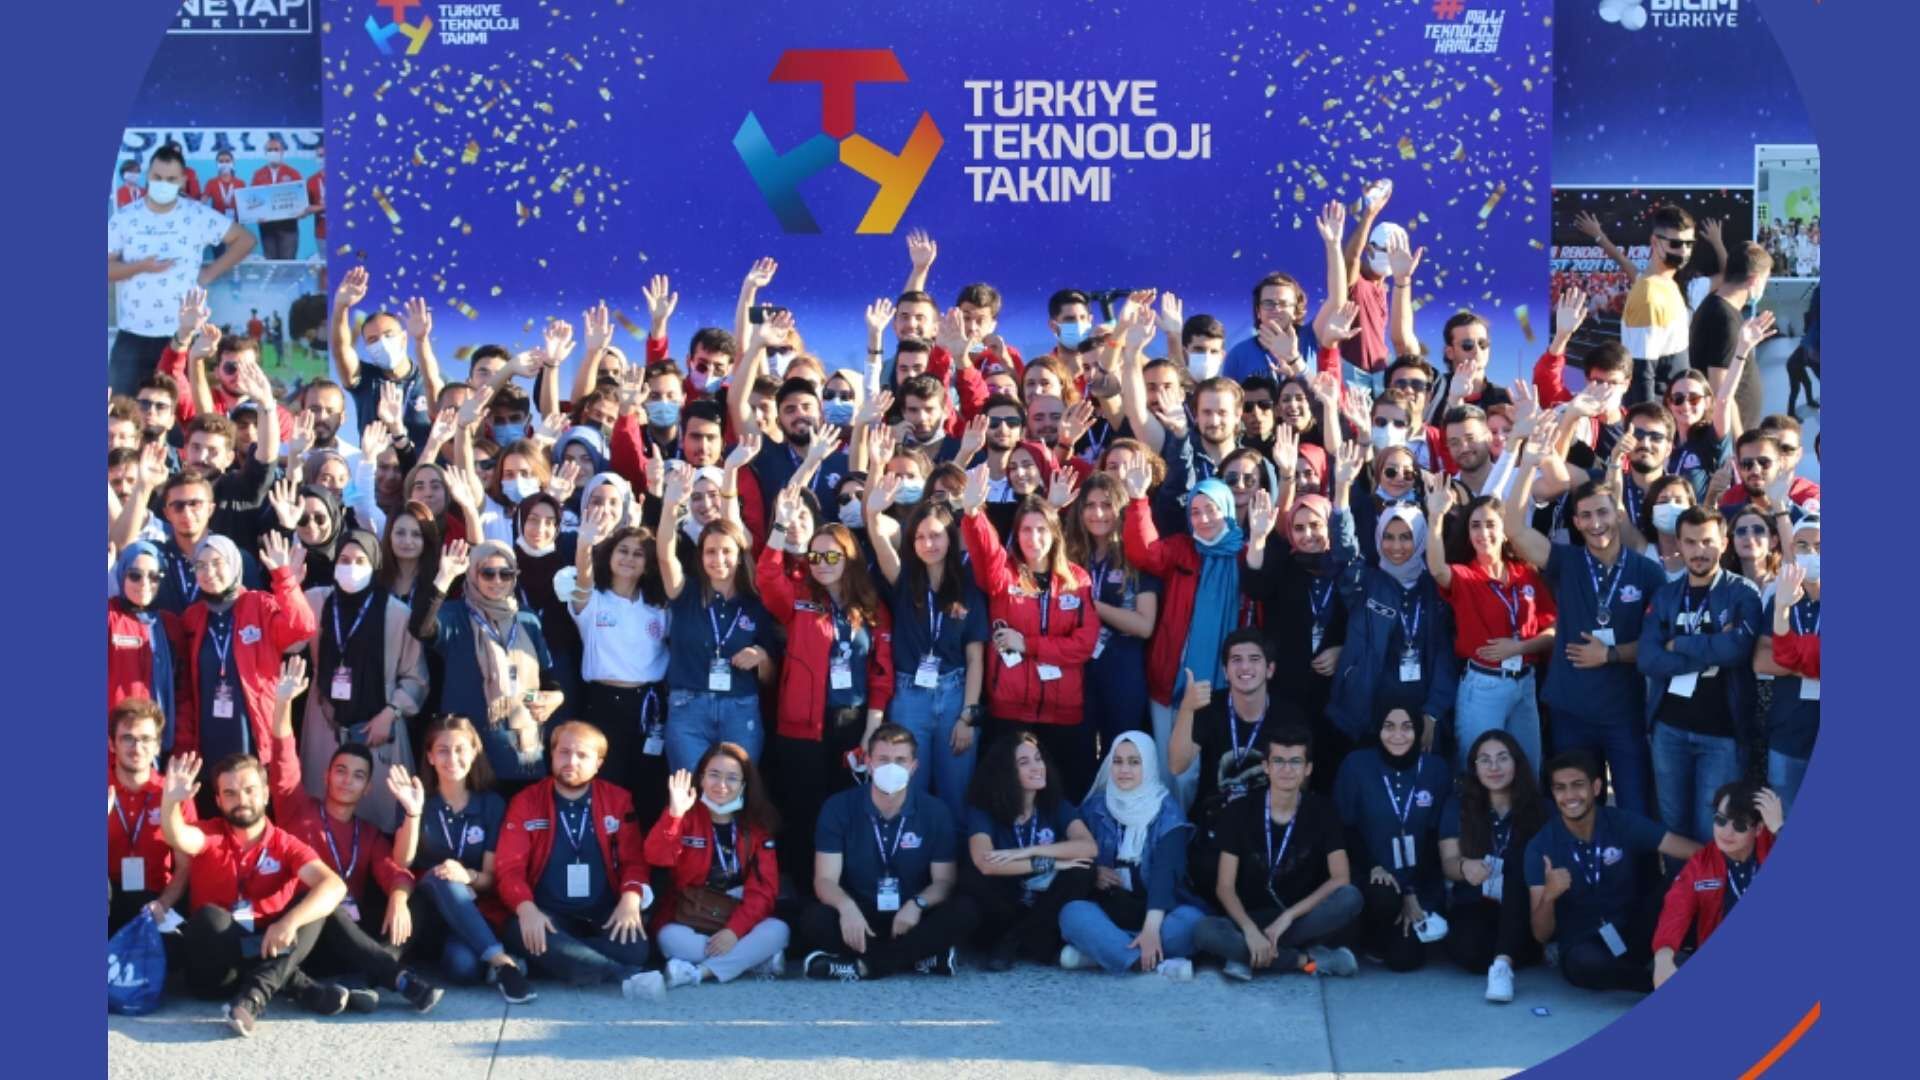 Özdemir Bayraktar Milli Teknoloji Bursu Başvuruları'nda Son 4 Gün